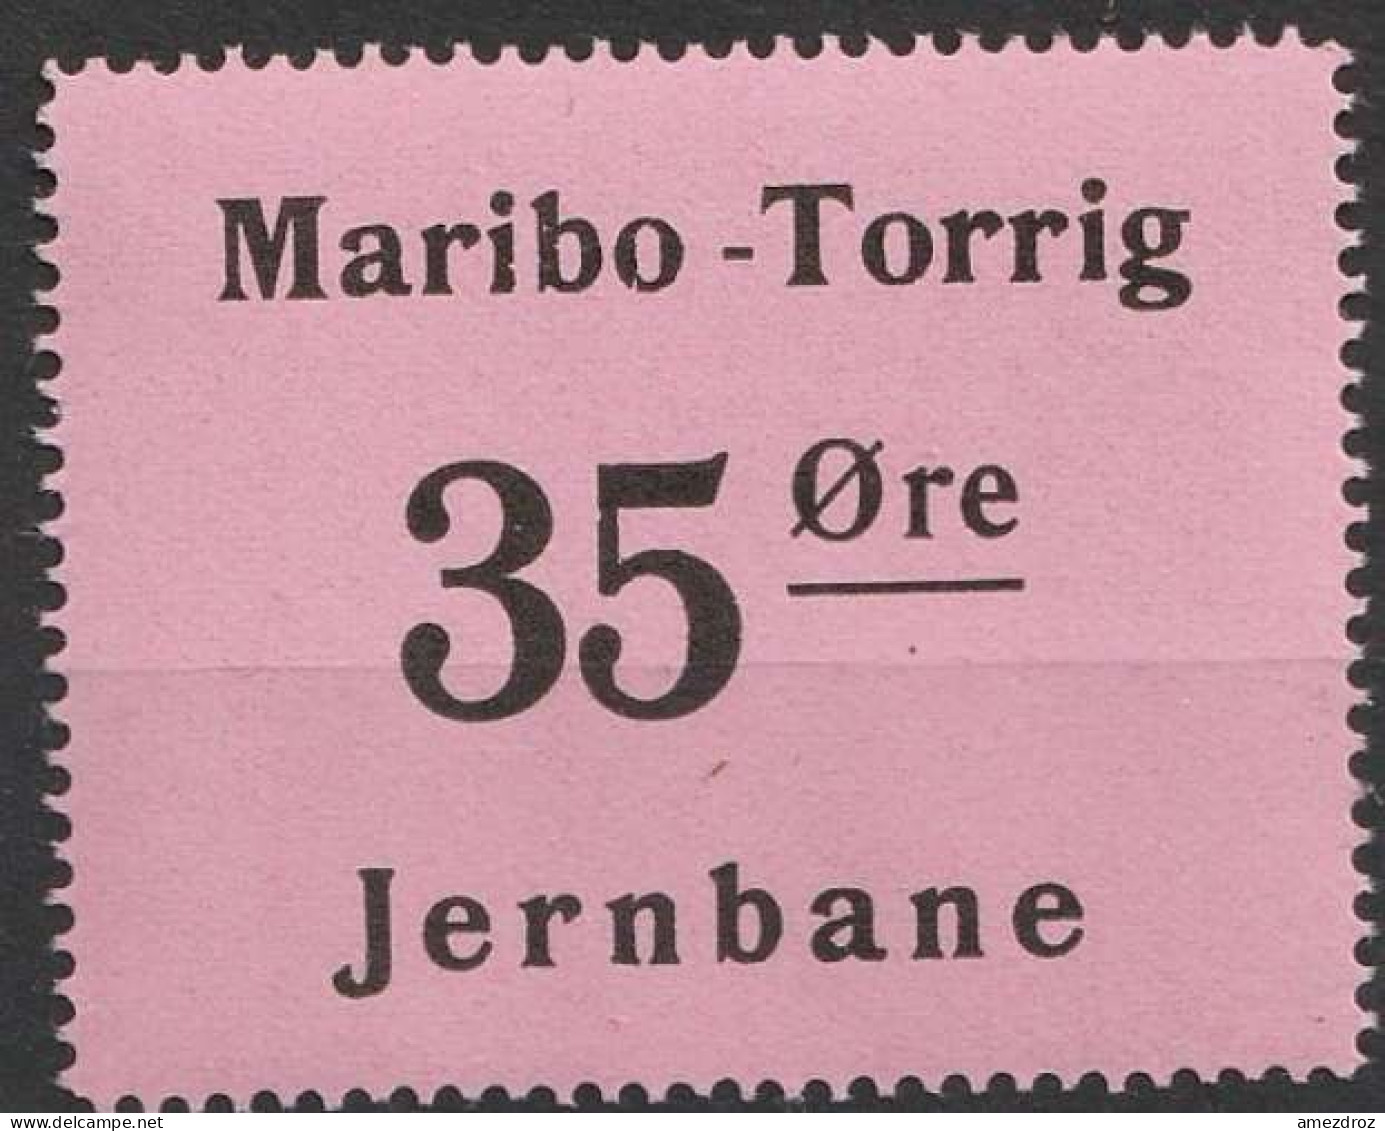 Chemin De Fer Danois ** - Dänemark Railway Eisenbahn Maribo - Torrig Jernbane   (A13) - Paketmarken